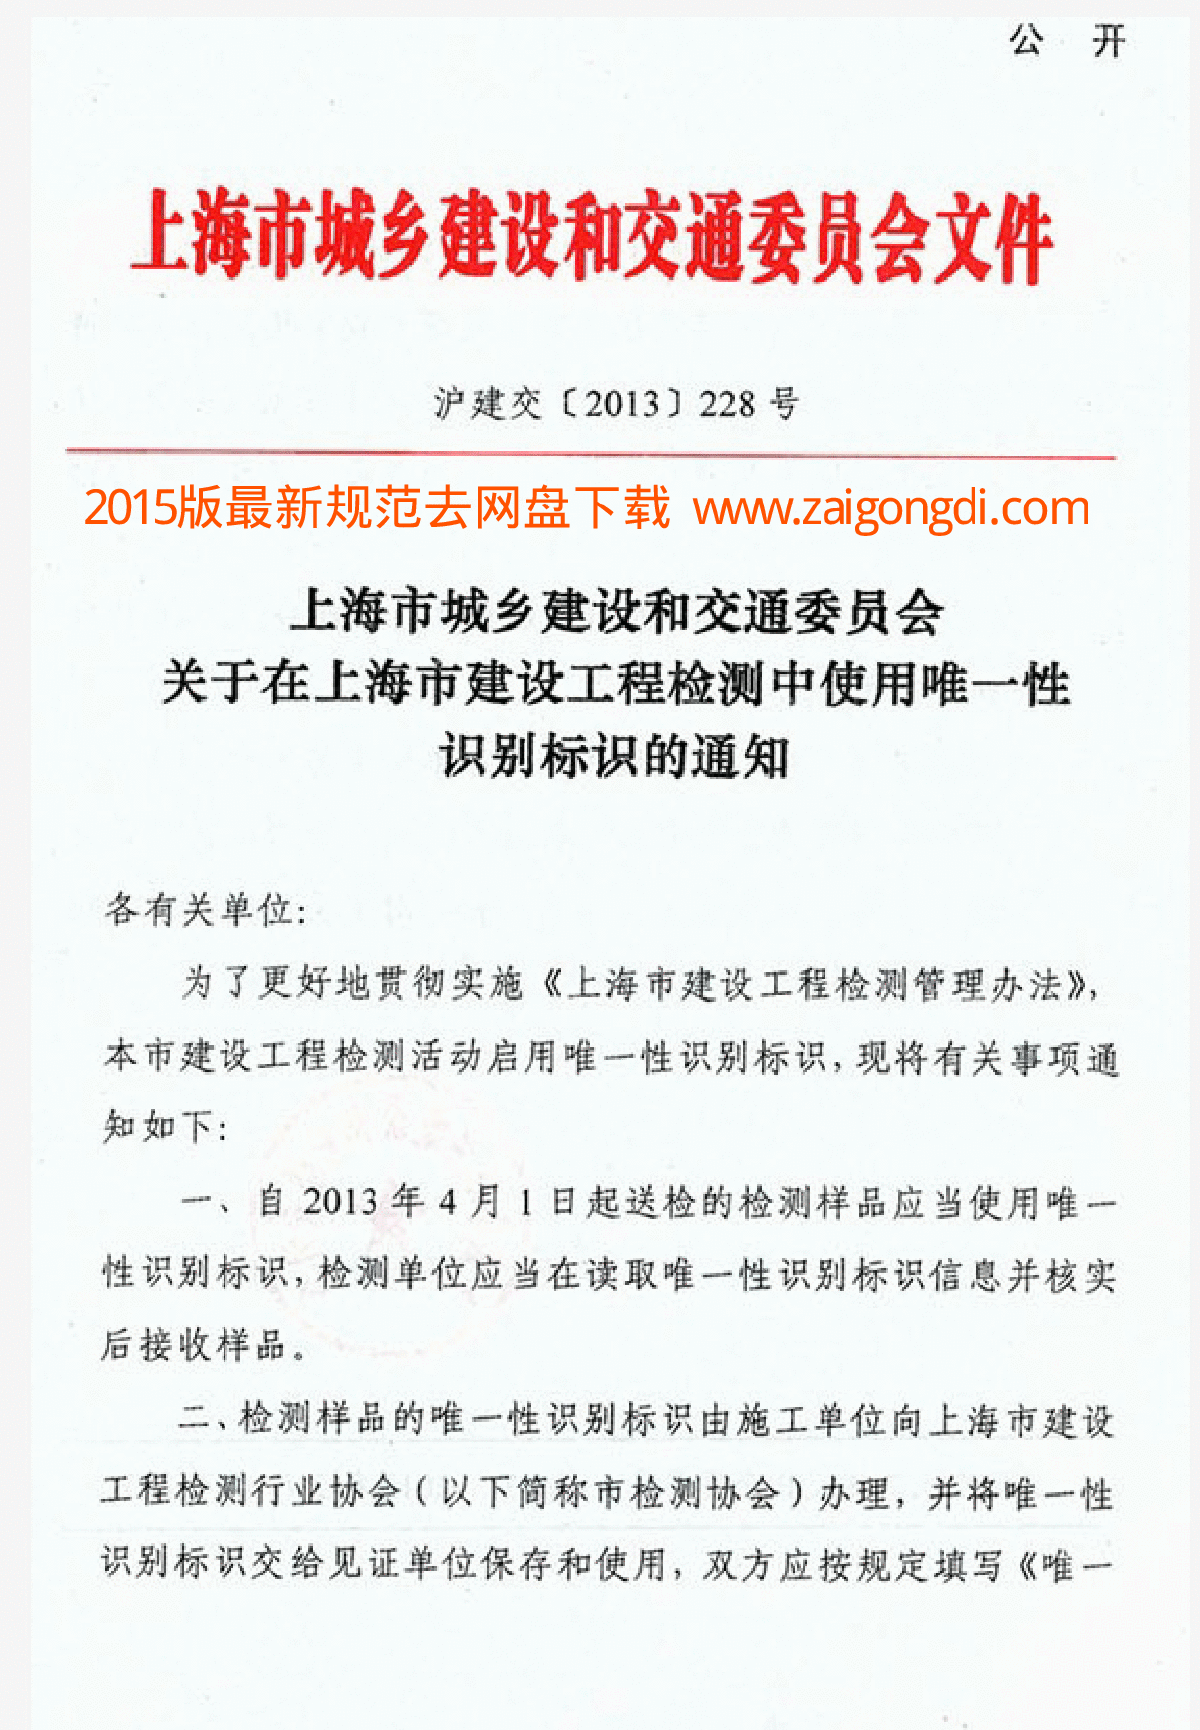 上海市城乡建设和交通委员会文件沪建交〔2013〕228号《关于XX标识的通知》